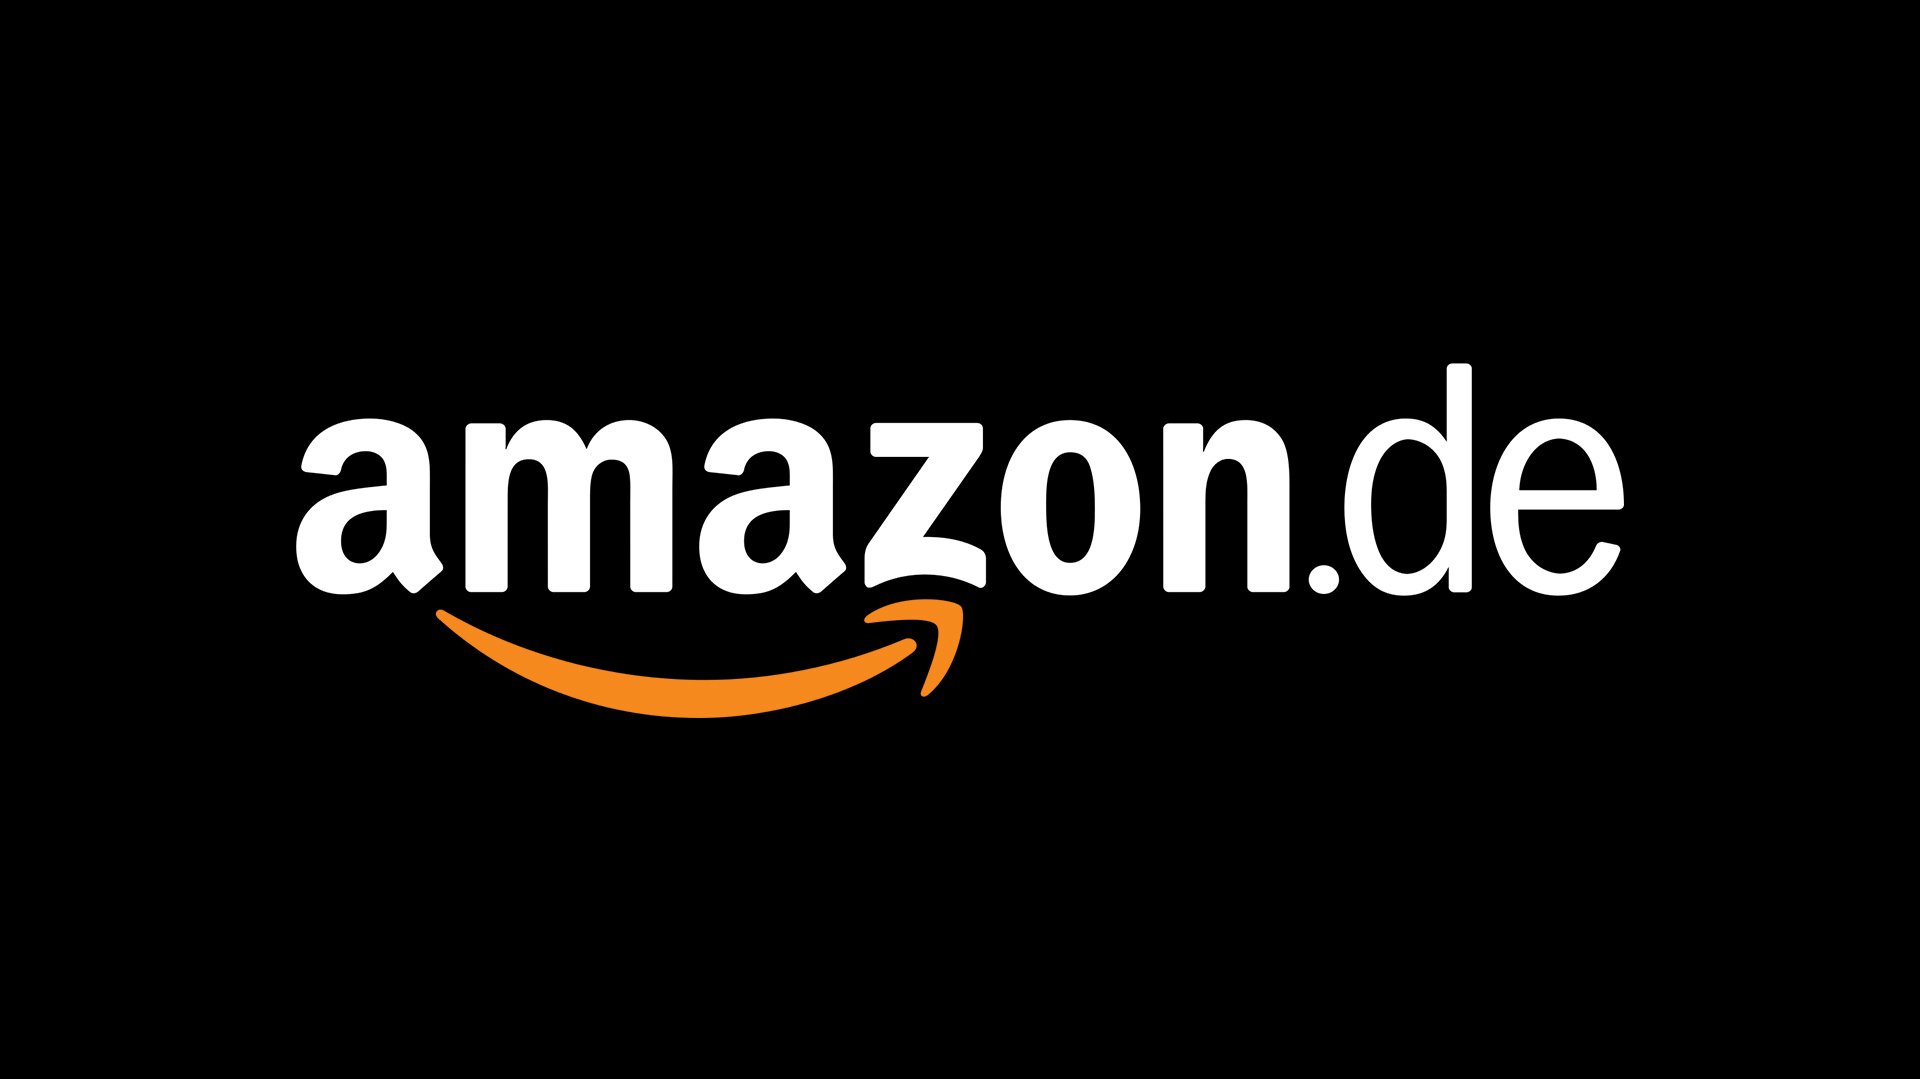 Amazon-Gutschein einlösen - so geht's | heise online